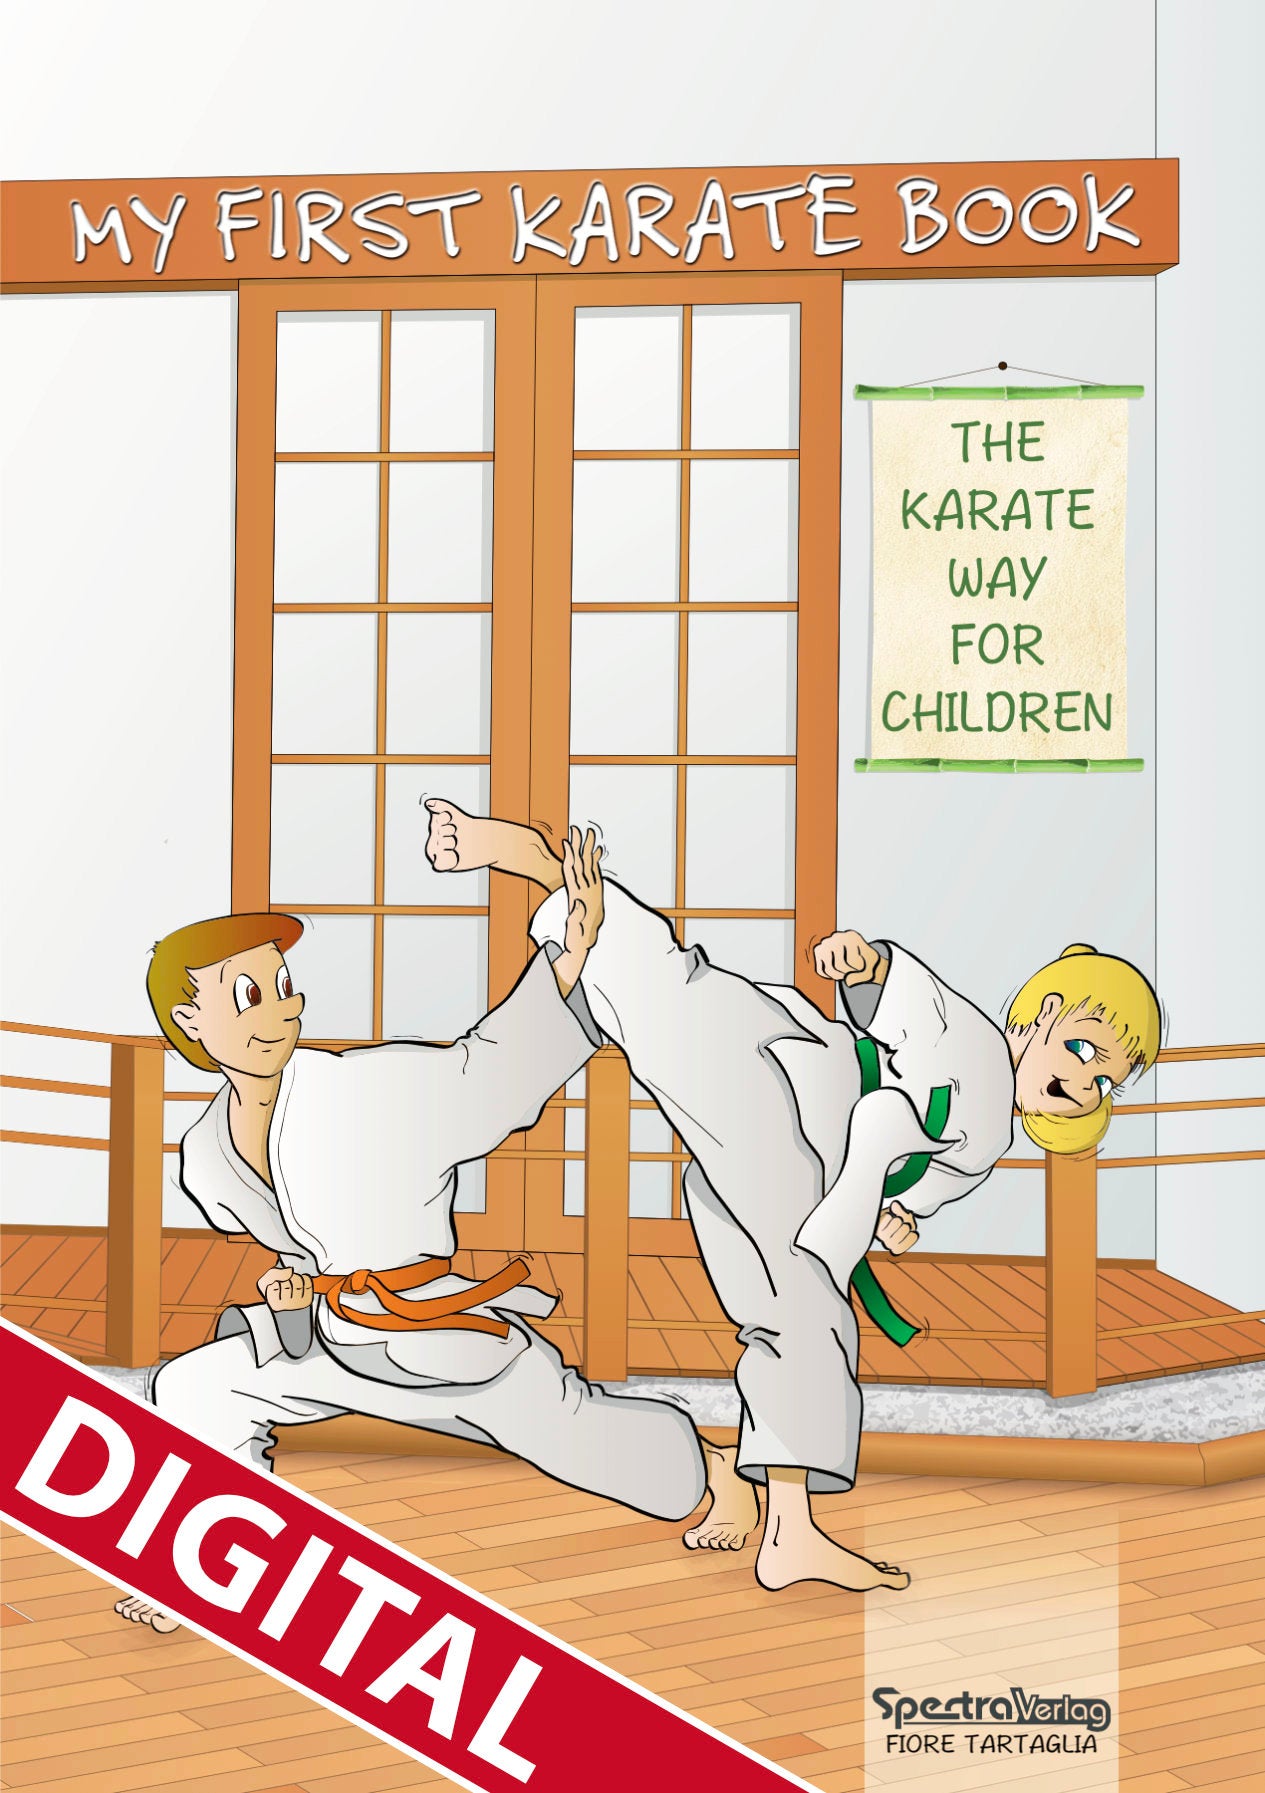 🇬🇧 Digital-Book | My first karate book